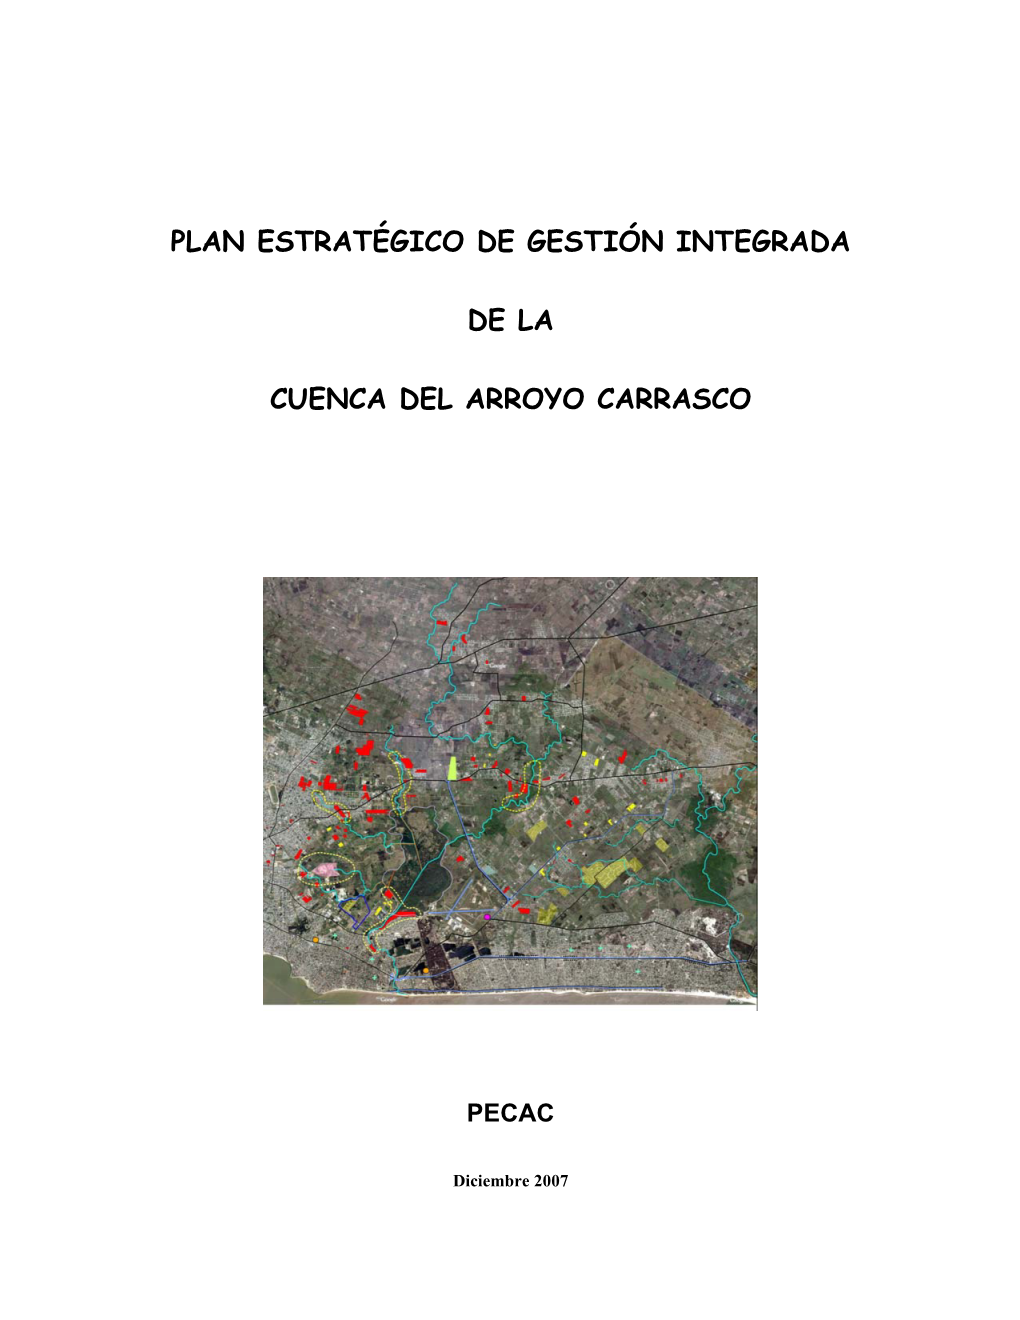 Plan Estratégico De Gestión Integrada De La Cuenca Del Arroyo Carrasco (Pecac)